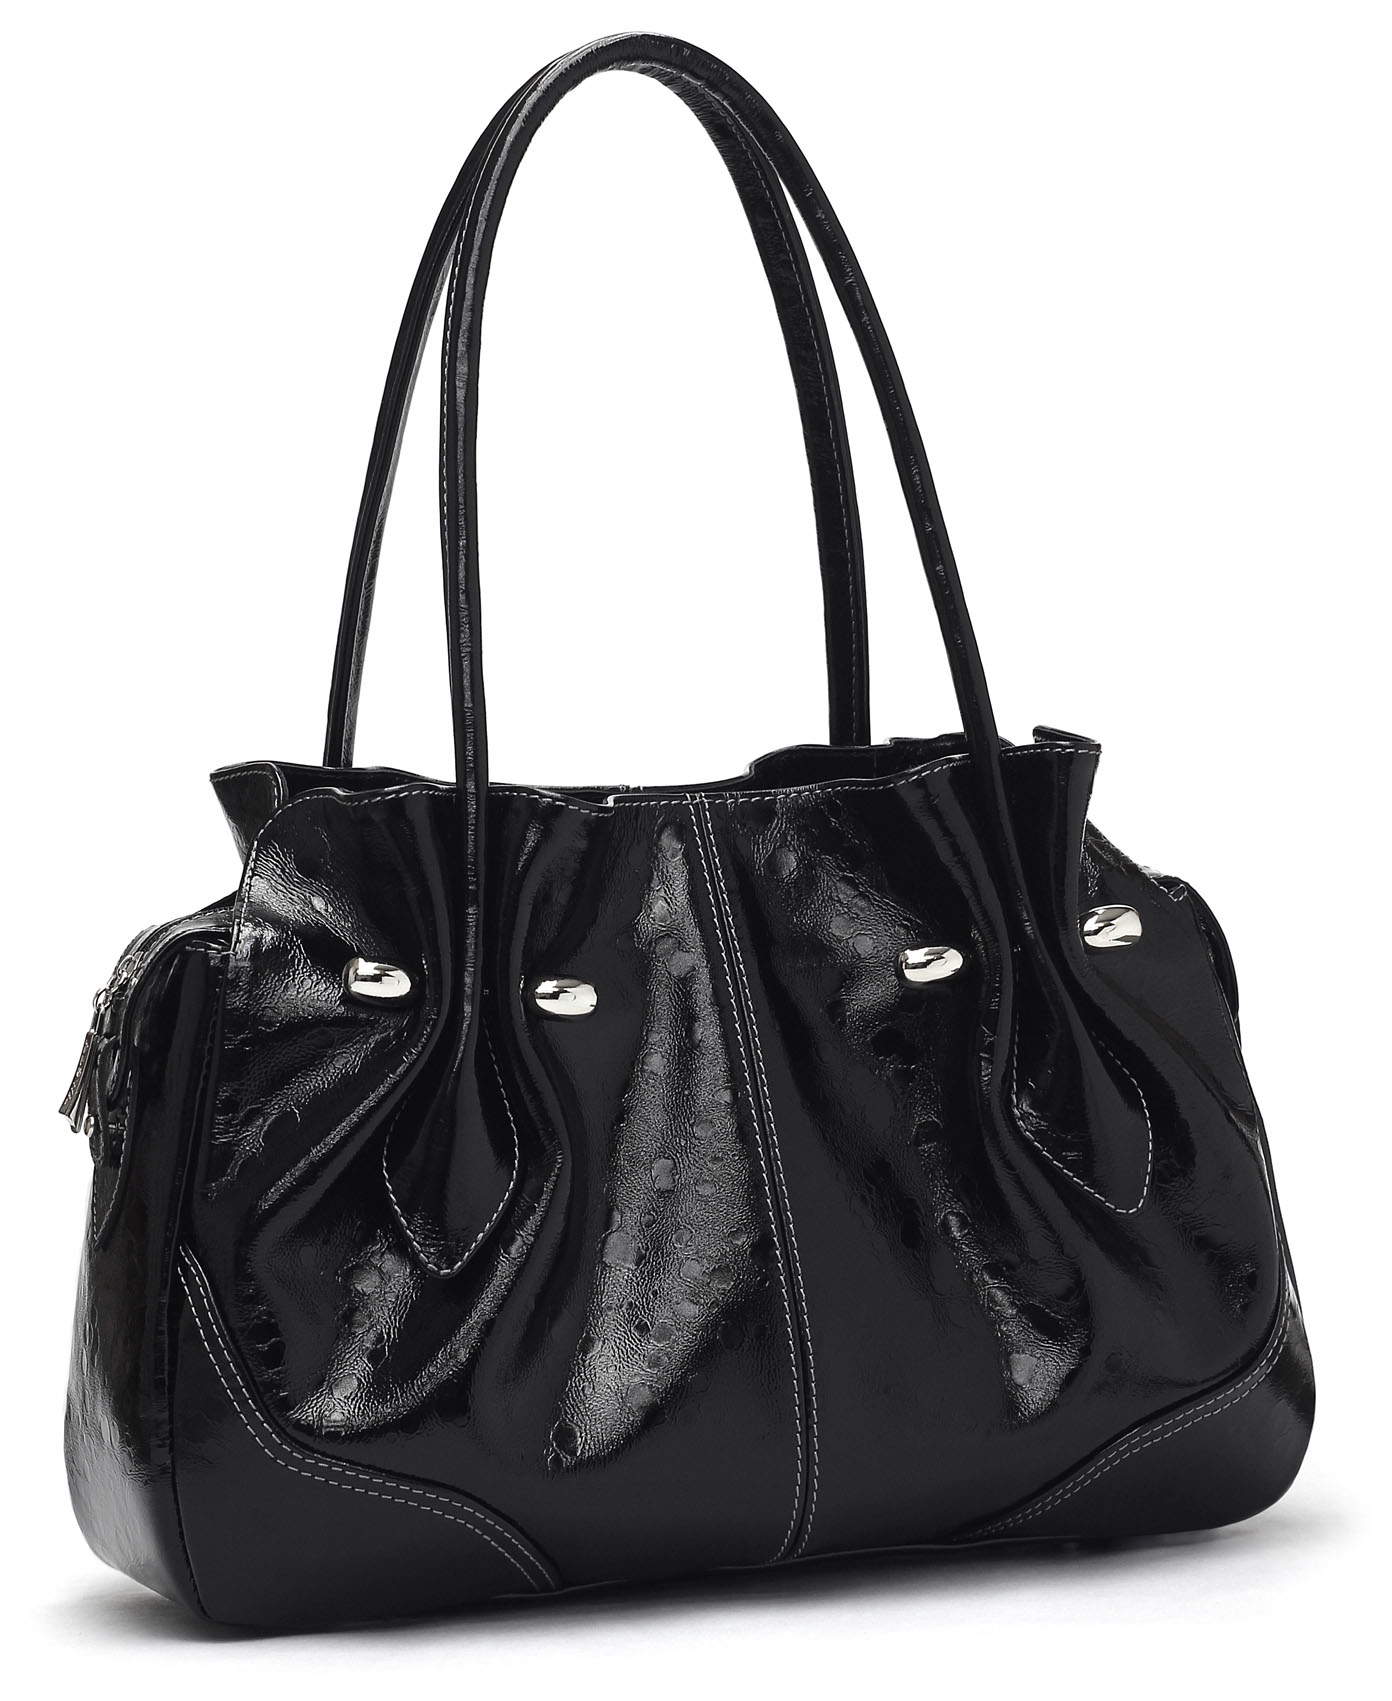 Хотим купить сумку. Сумка женская. Черная кожаная сумка. Женская кожаная сумка. Женская кожаная сумка черная.